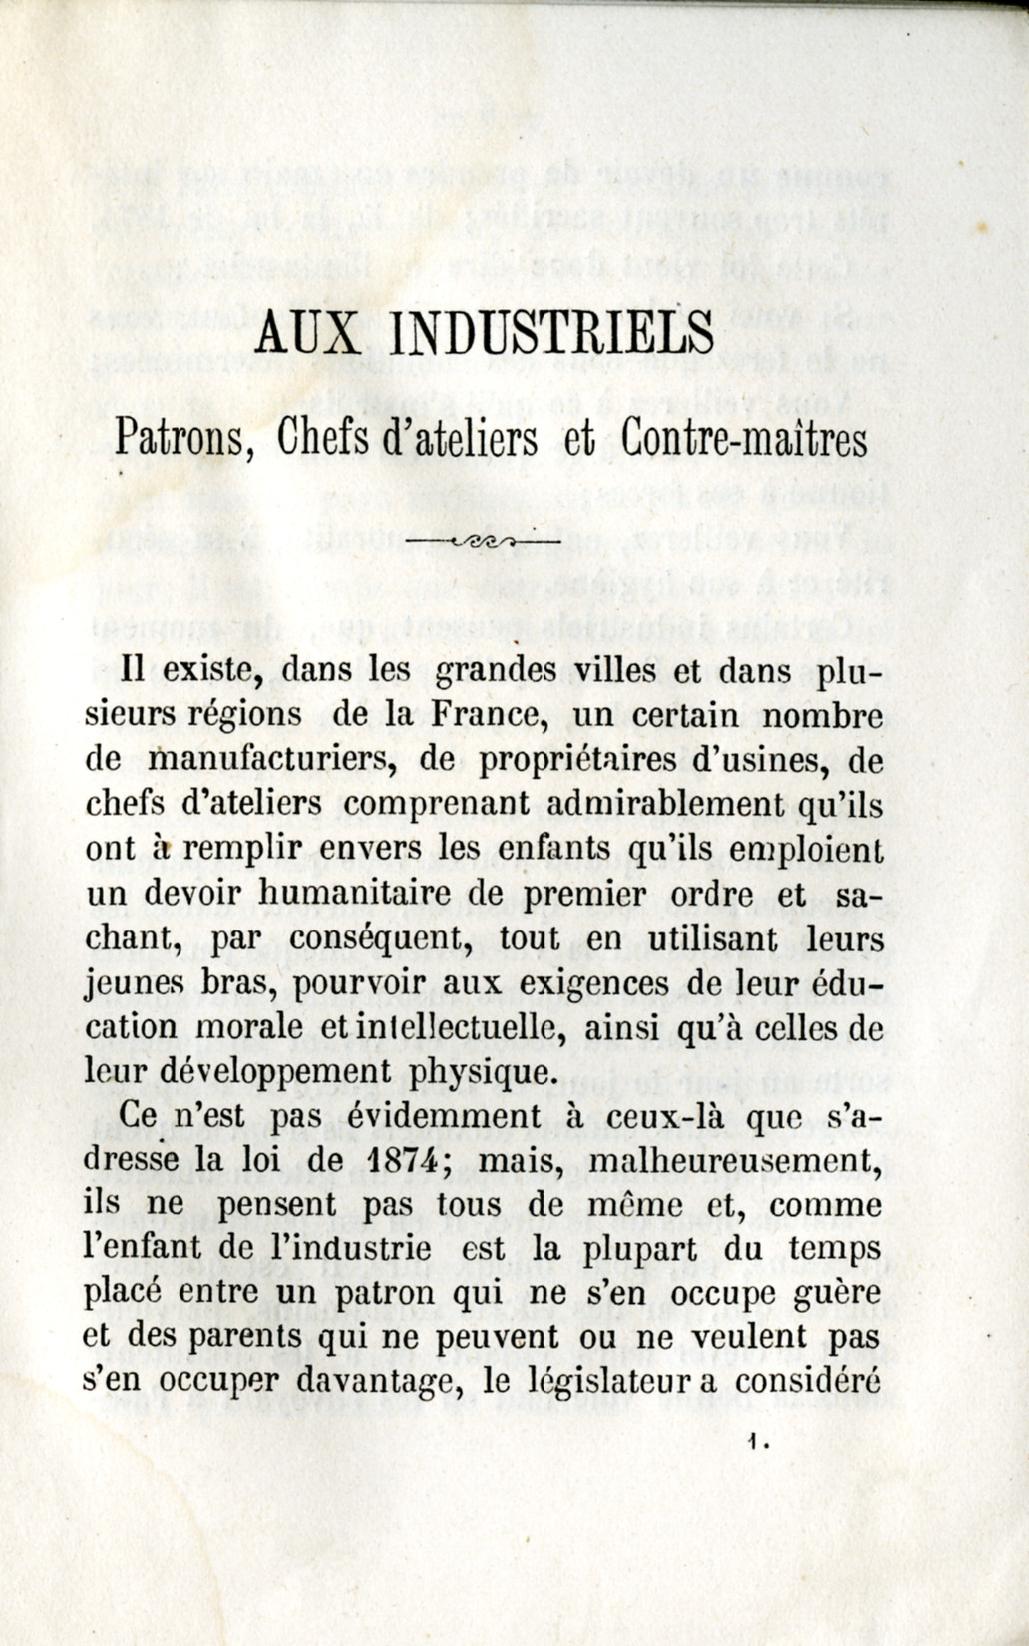 Introduction aux industriels